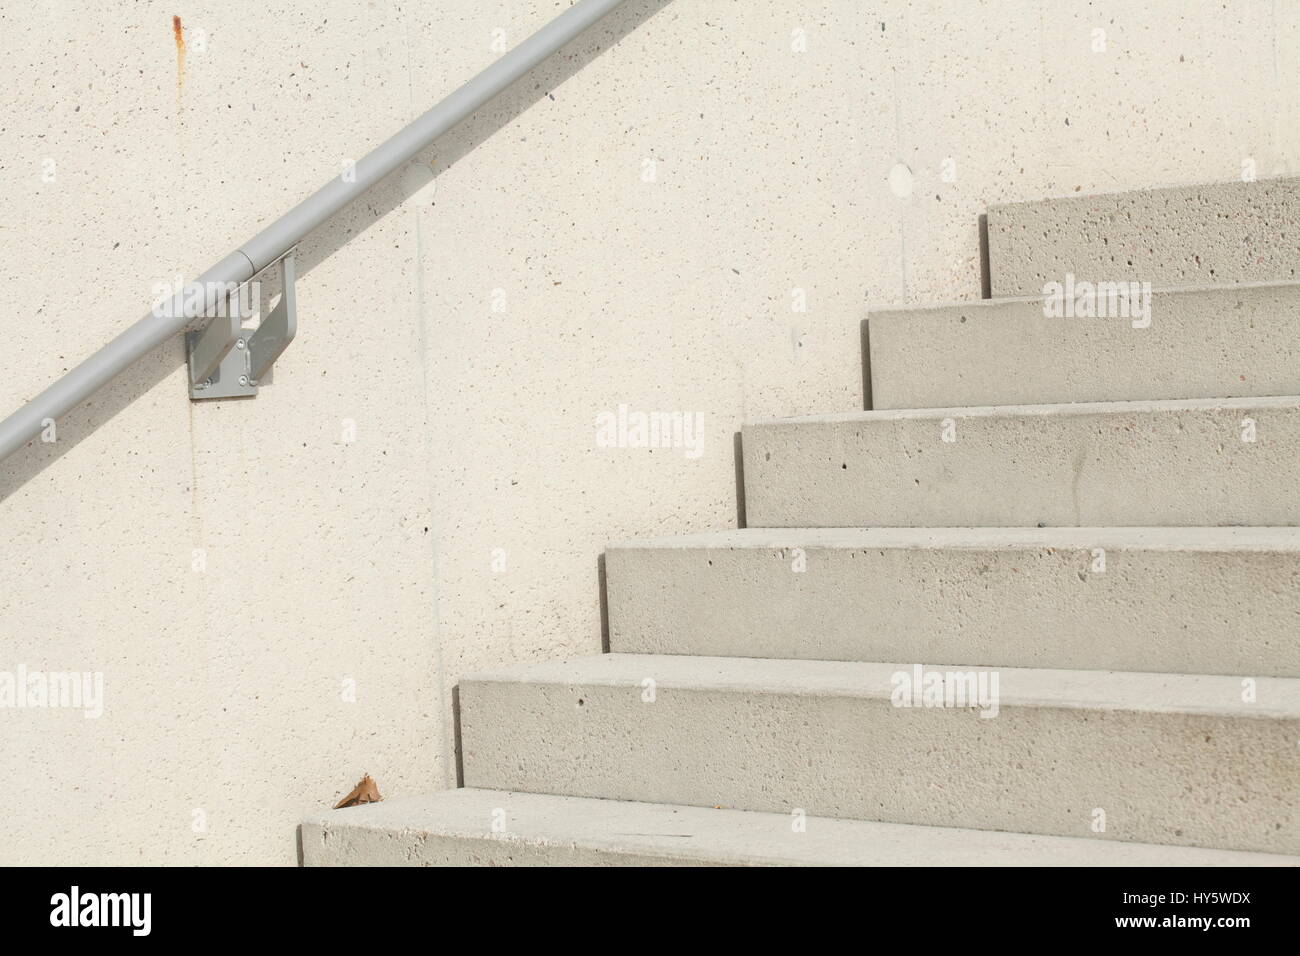 concrete stones stairway Stock Photo